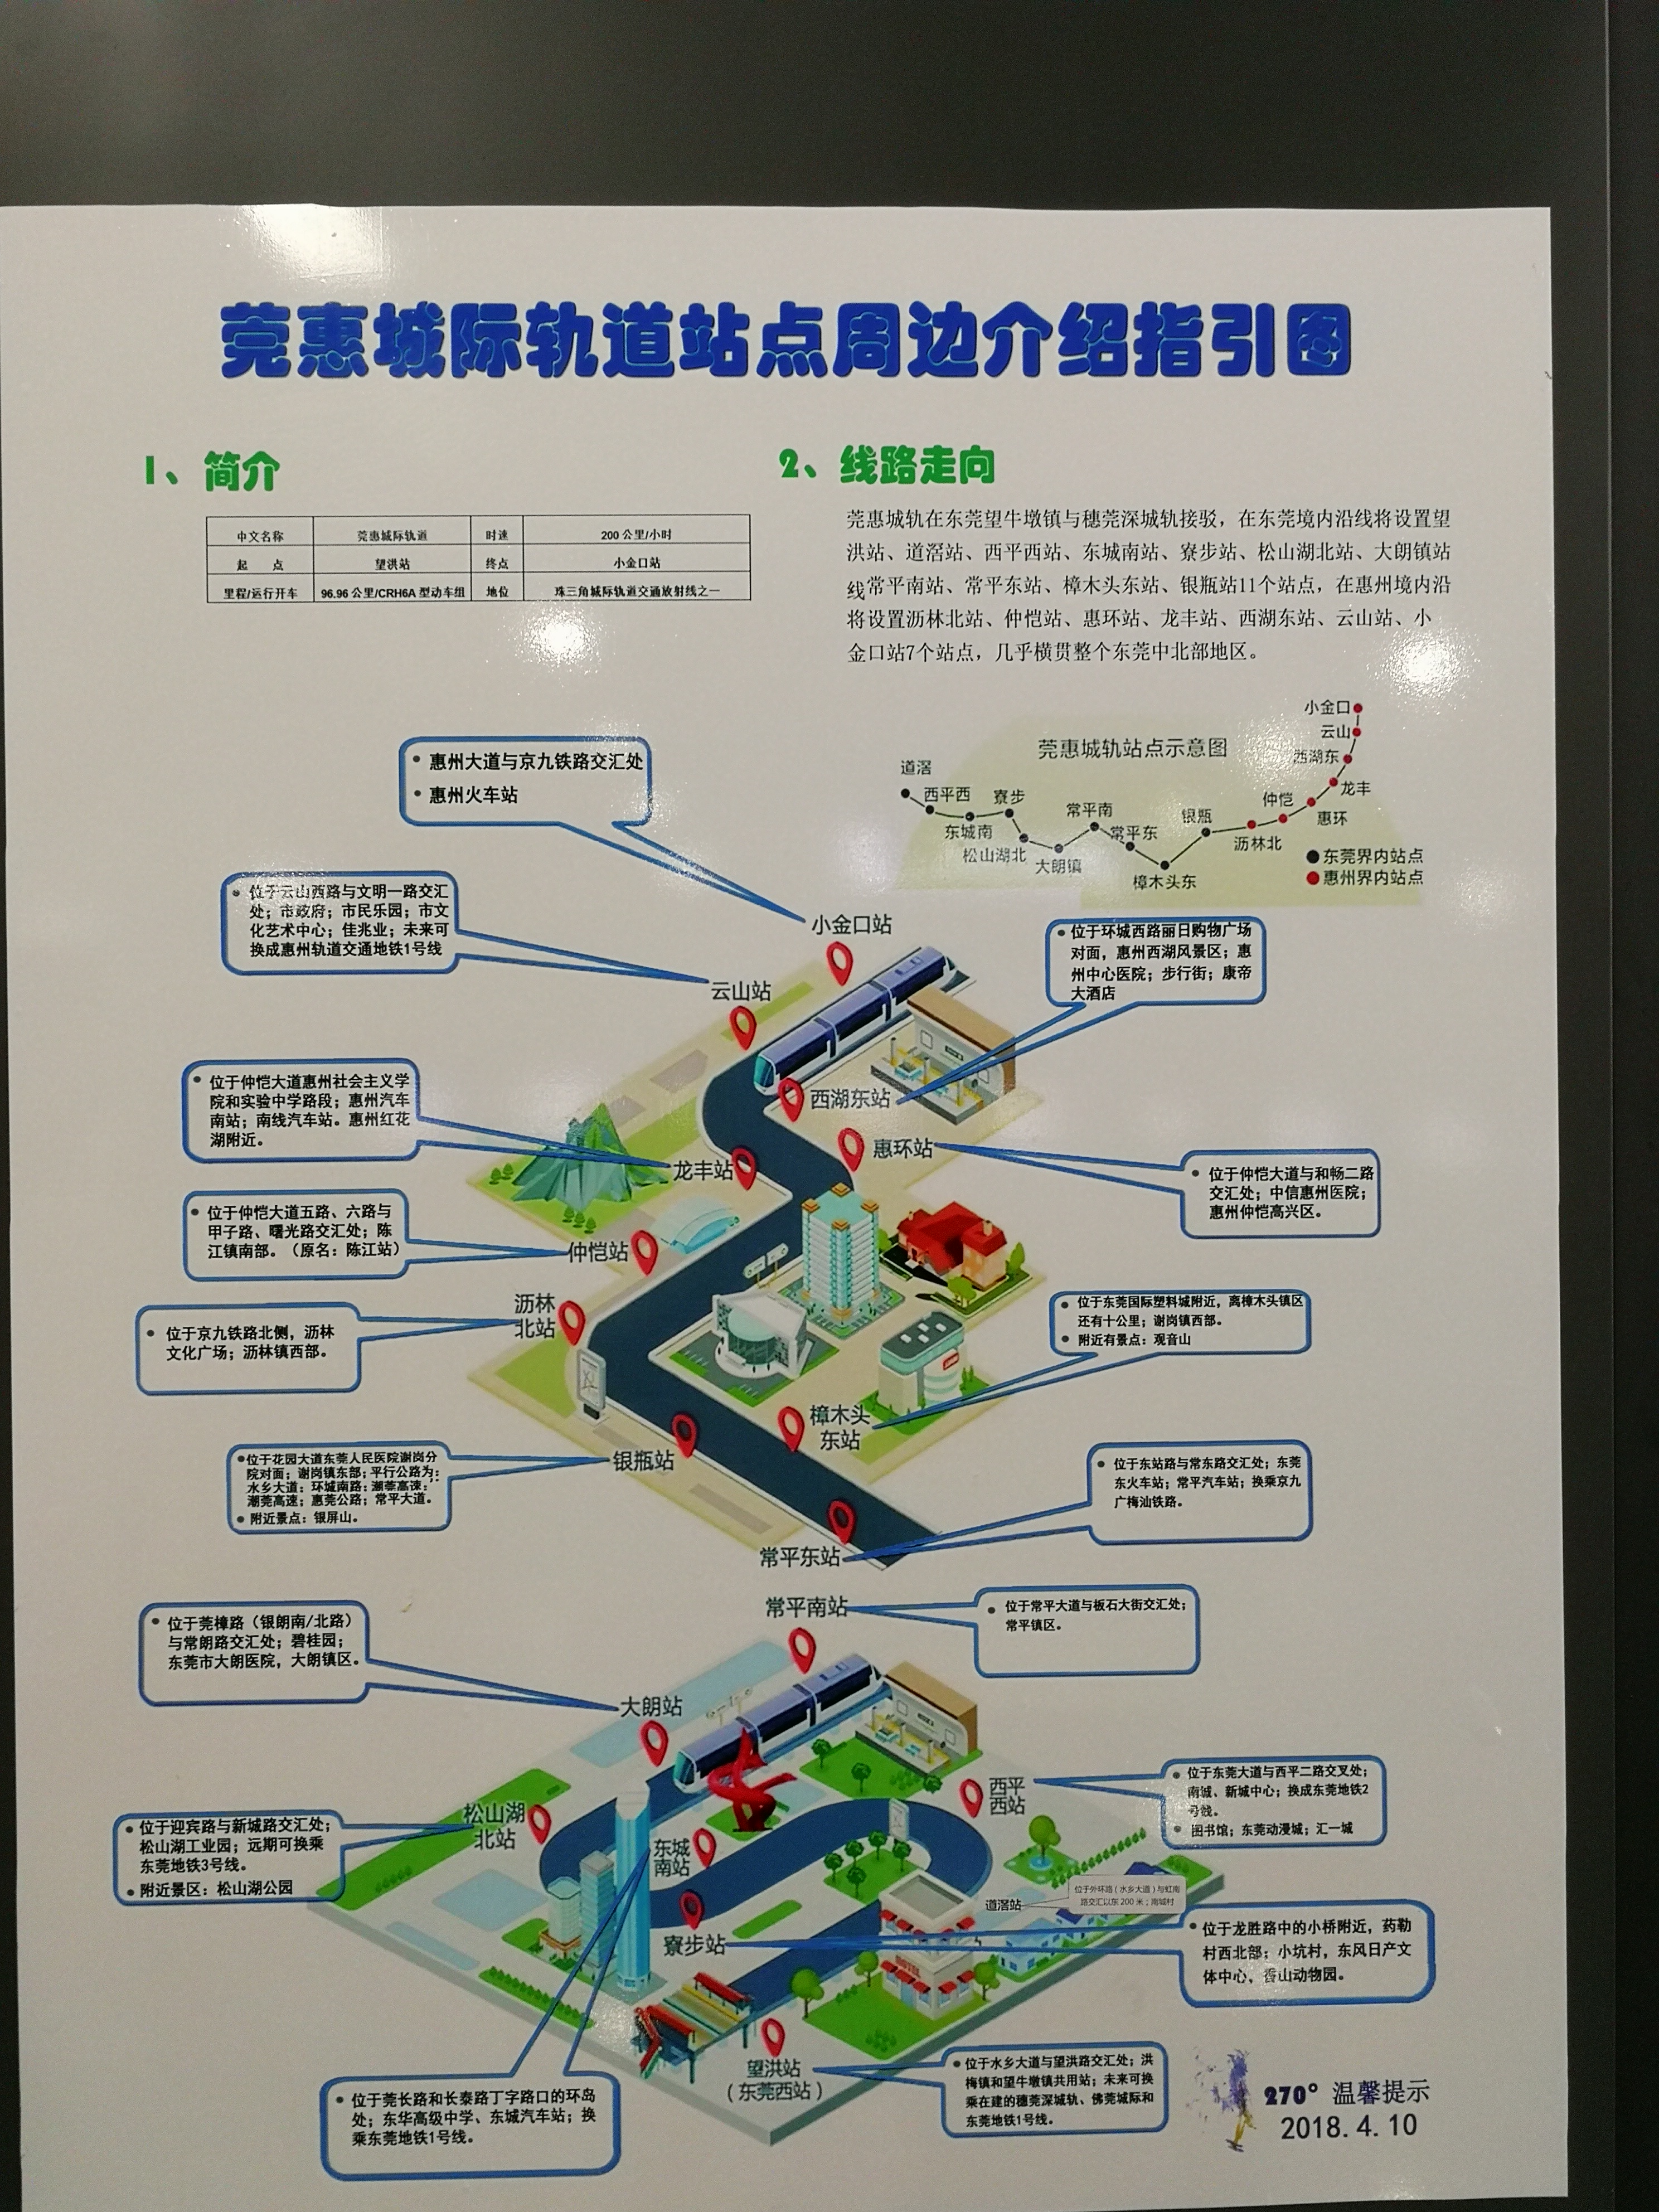 廣惠城際鐵路莞惠段沿線站點及周邊示意圖